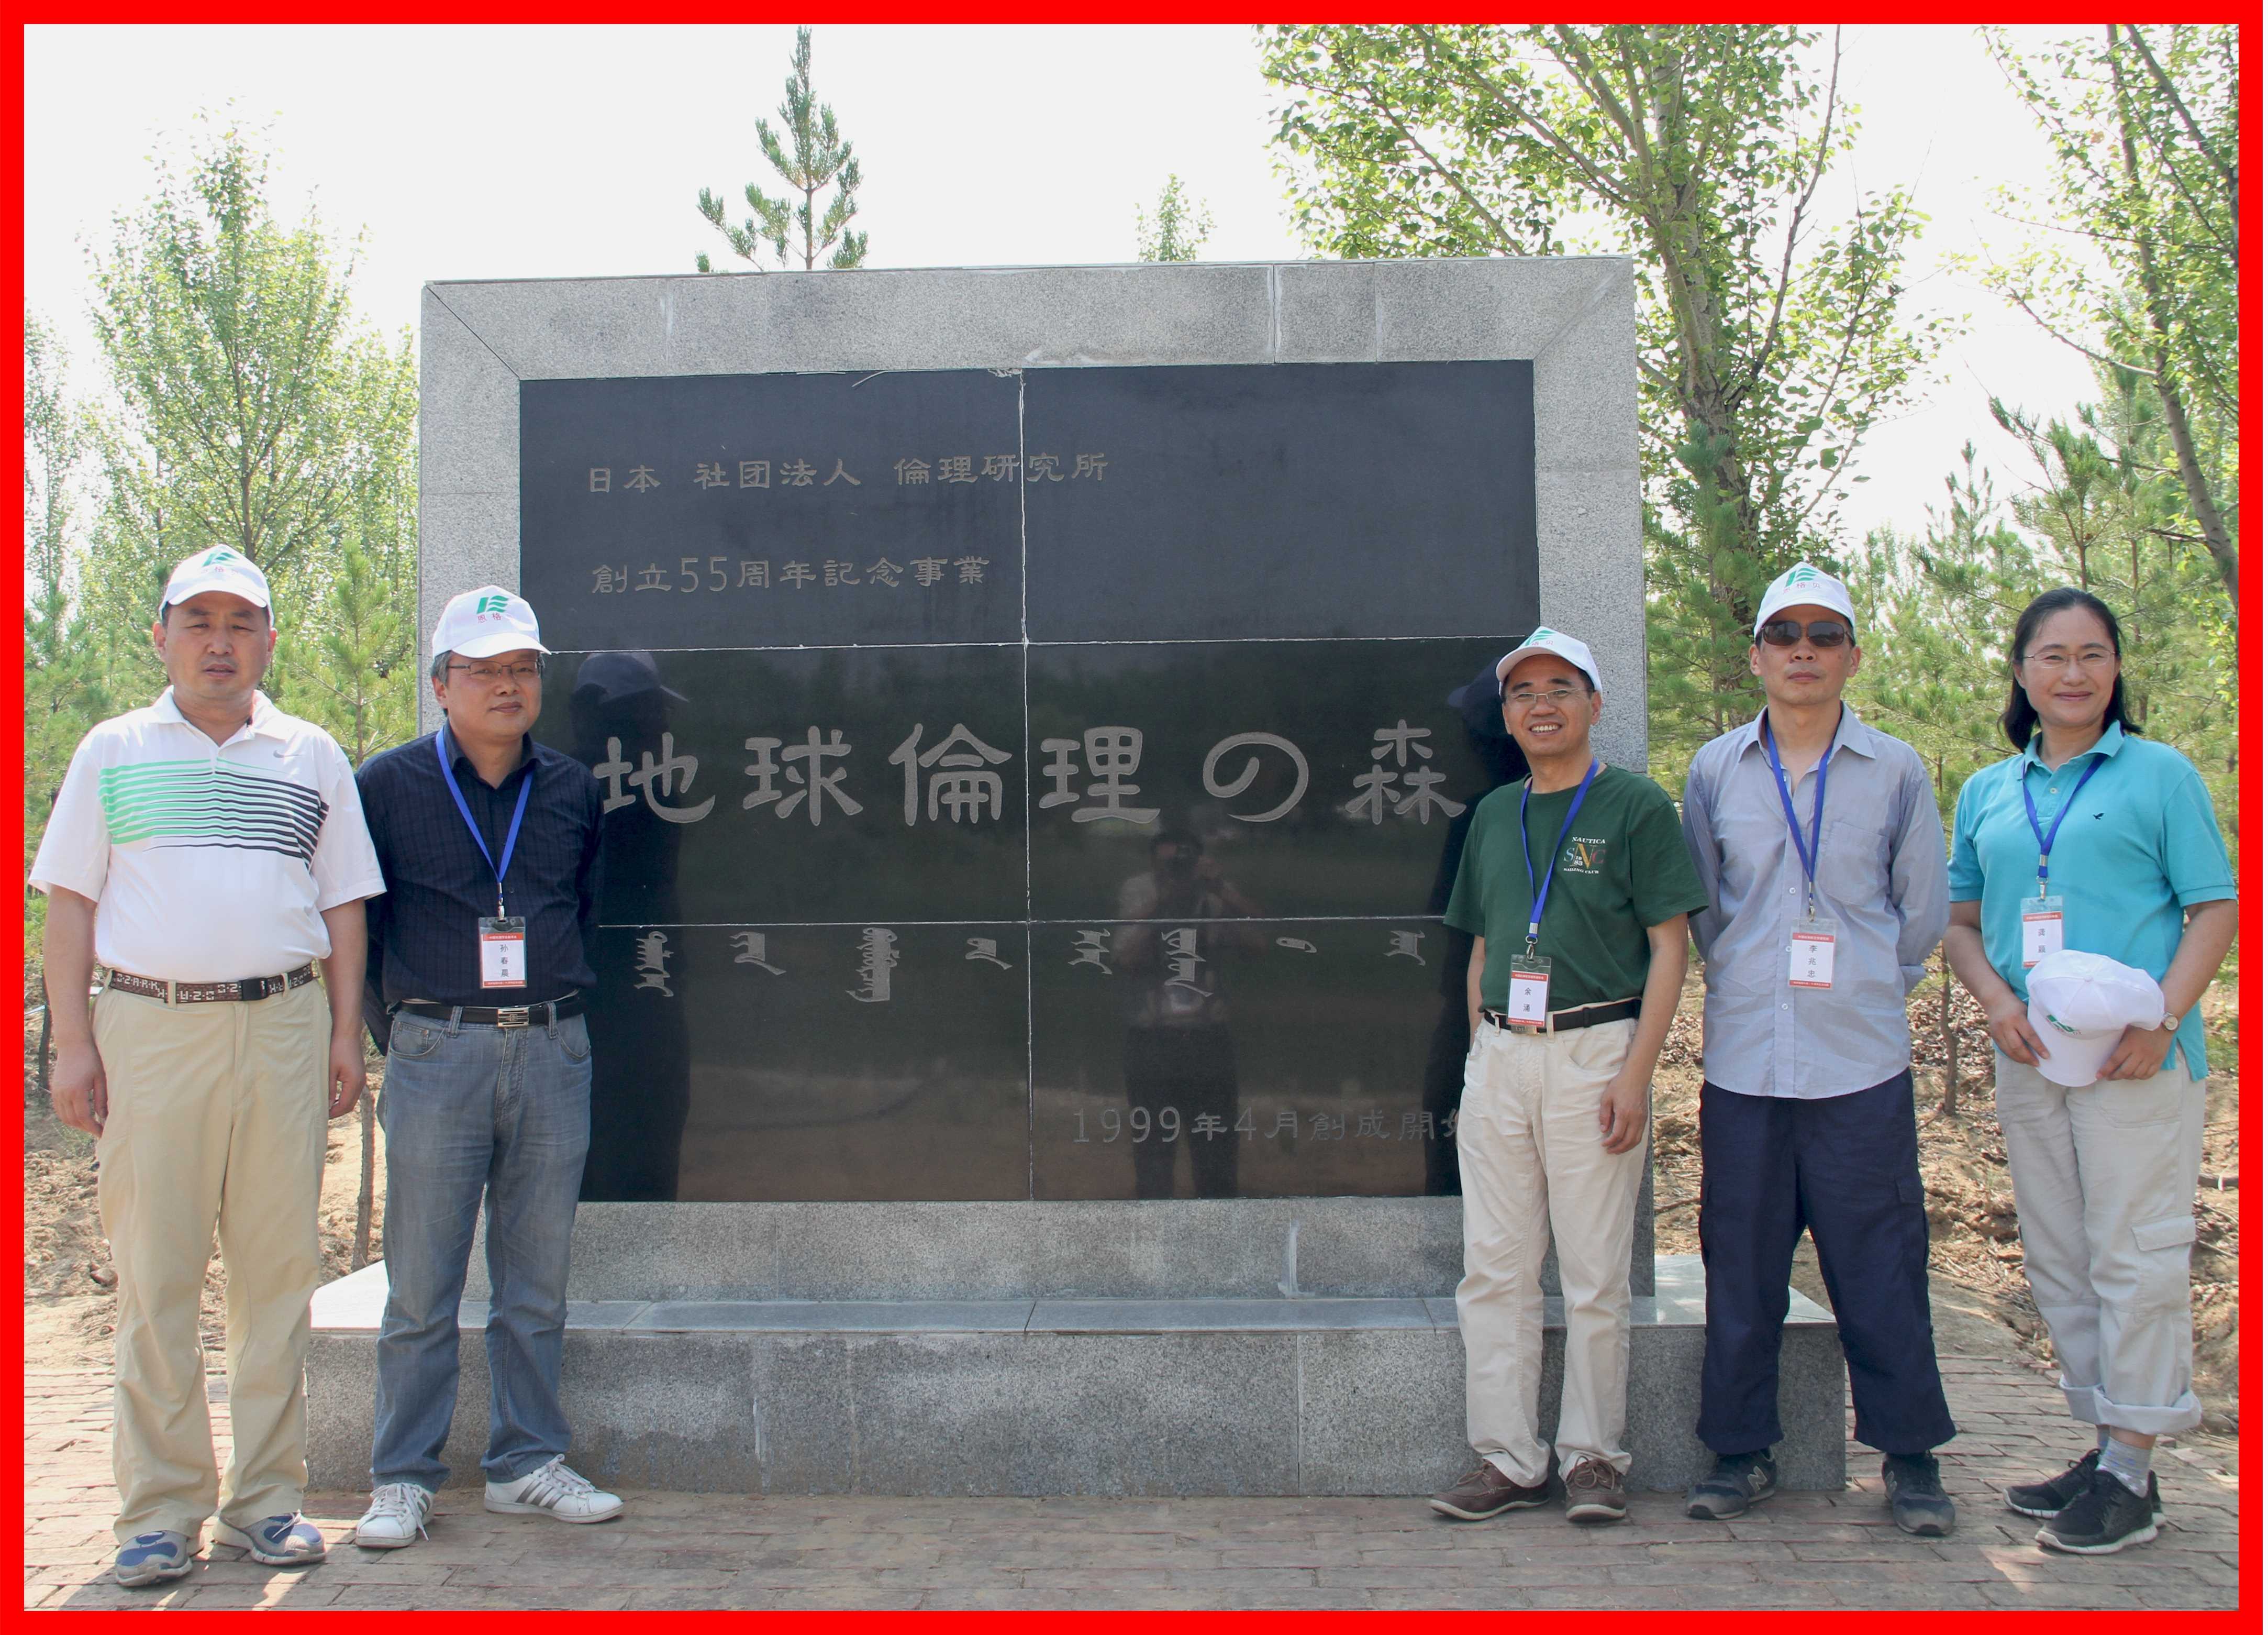 2014年7月，中日伦理学人在内蒙古恩格贝共建“地球伦理之林”。